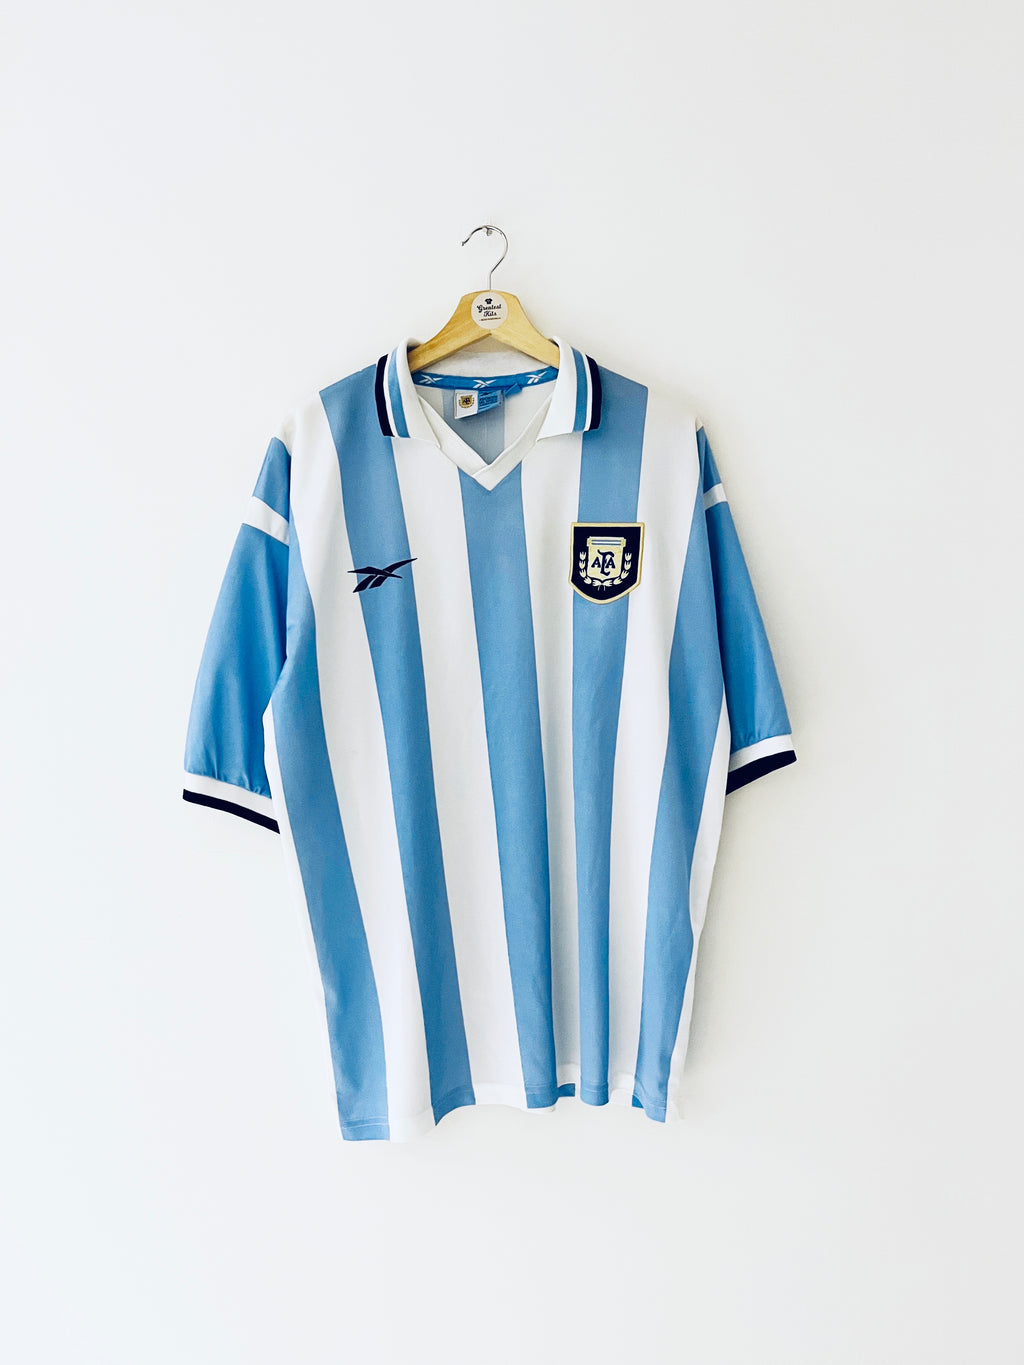 1999/00 Argentina Home Shirt (L) 9.5/10